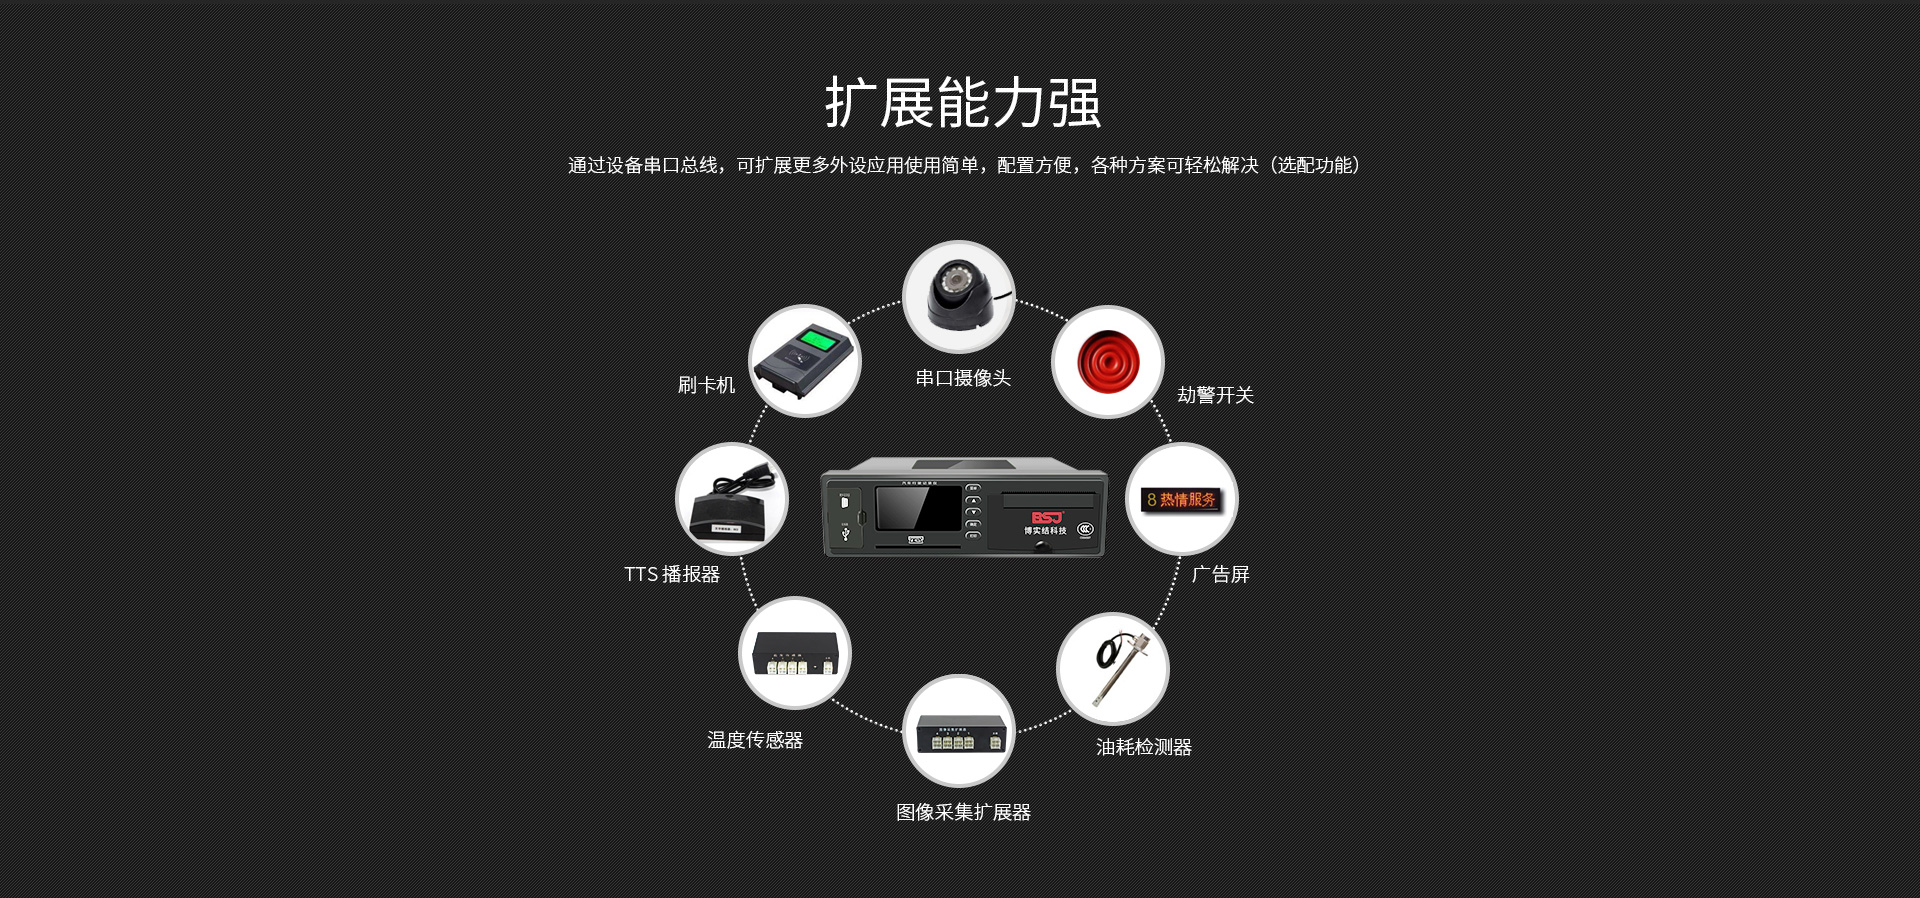 郑州讯诺科技货物运输车辆4G视频监控个性化方案 